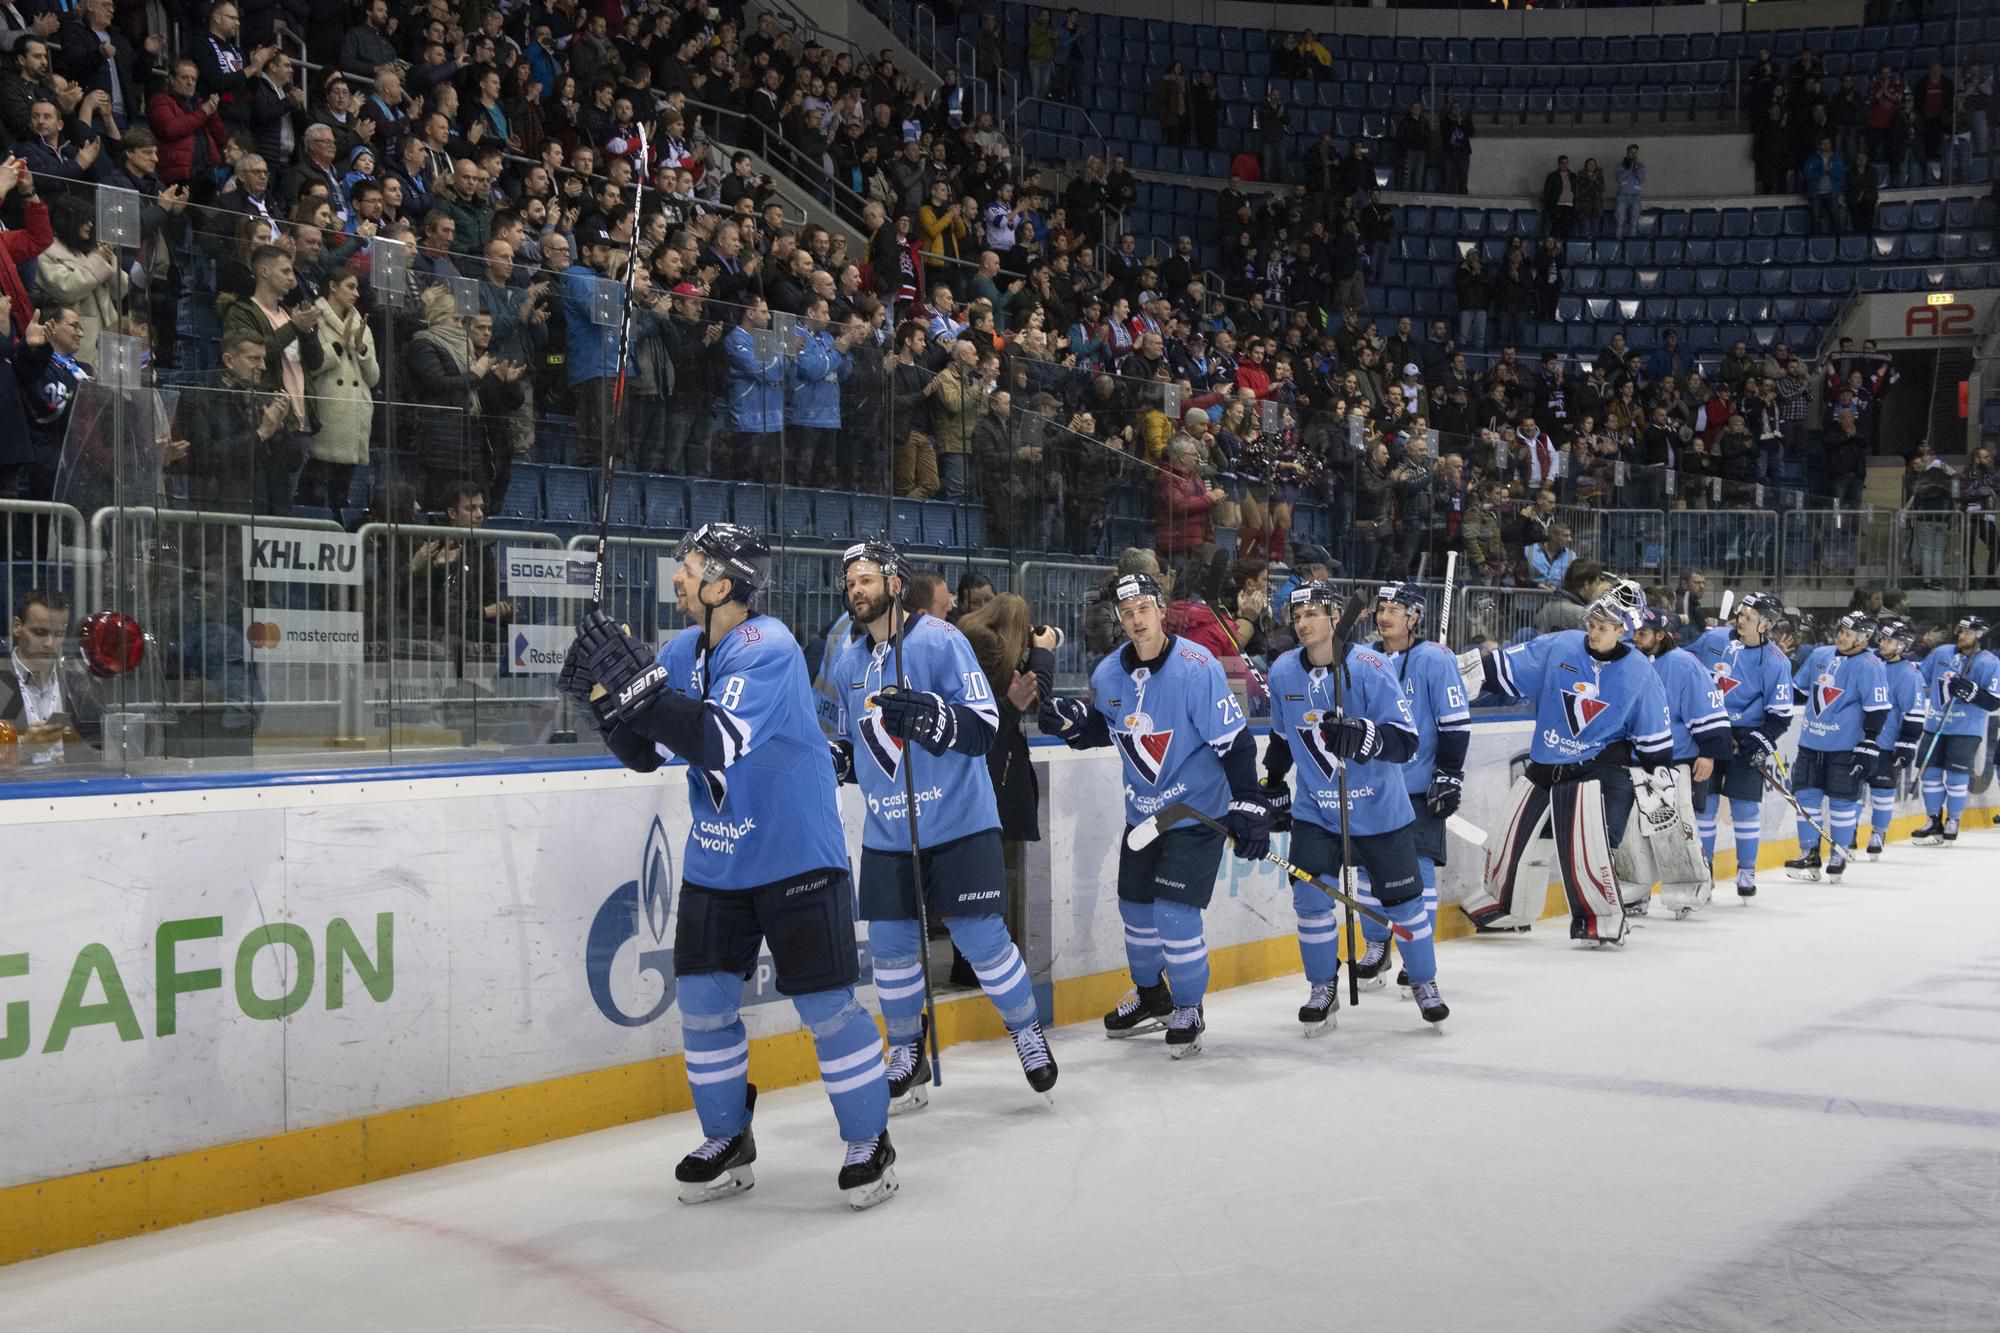 Hokejisti Slovana sa lúčili s fanúšikmi po poslednom domácom zápase v sezóne.